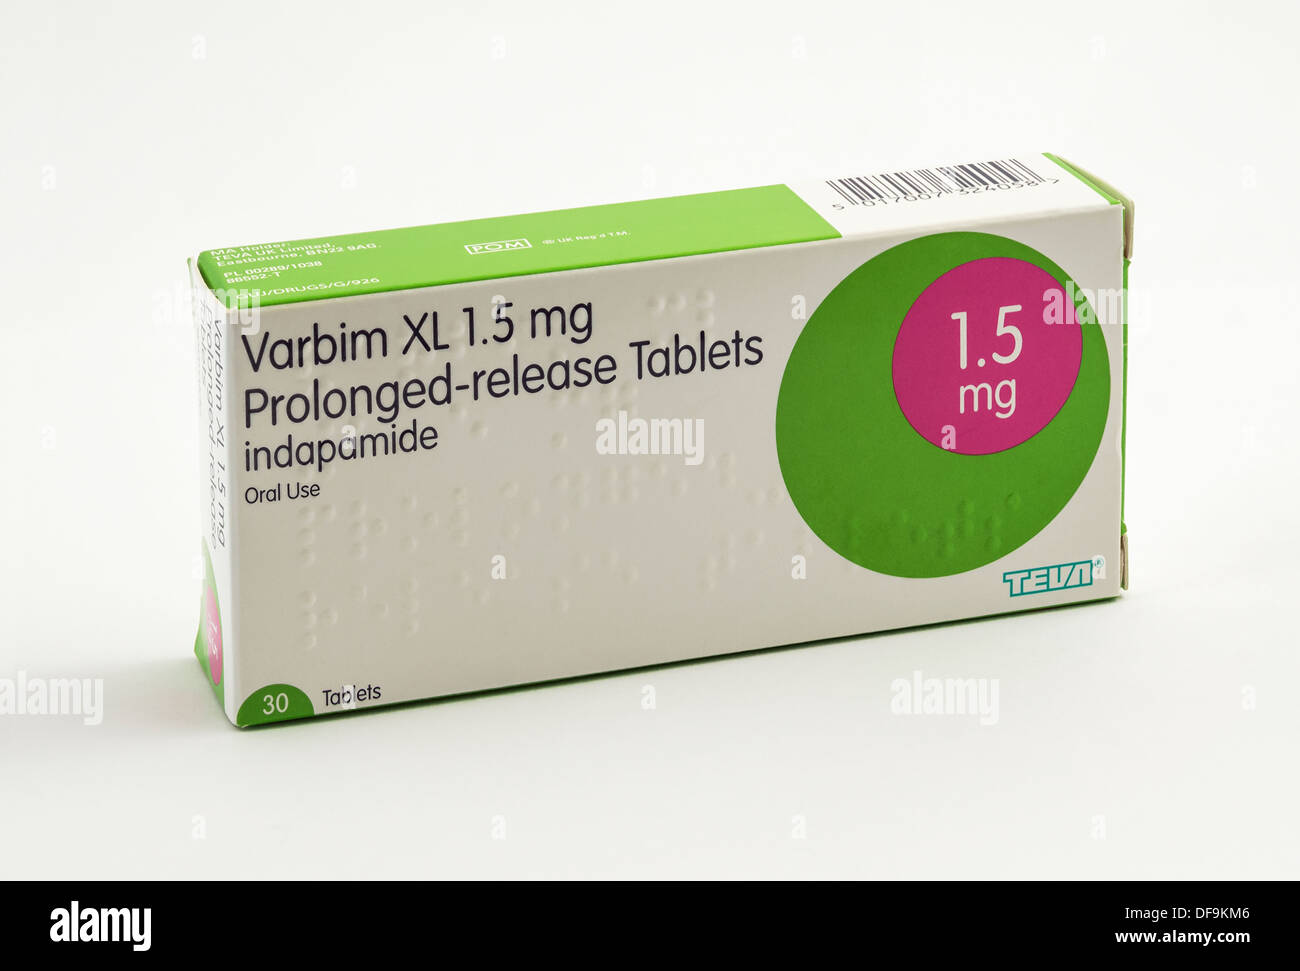 Indapamid gezeigt hier unter dem Handelsnamen Varbim XL verlängerte Freisetzung Tabletten. Dies ist ein Diuretikum zur Behandlung von Bluthochdruck eingesetzt. Stockfoto